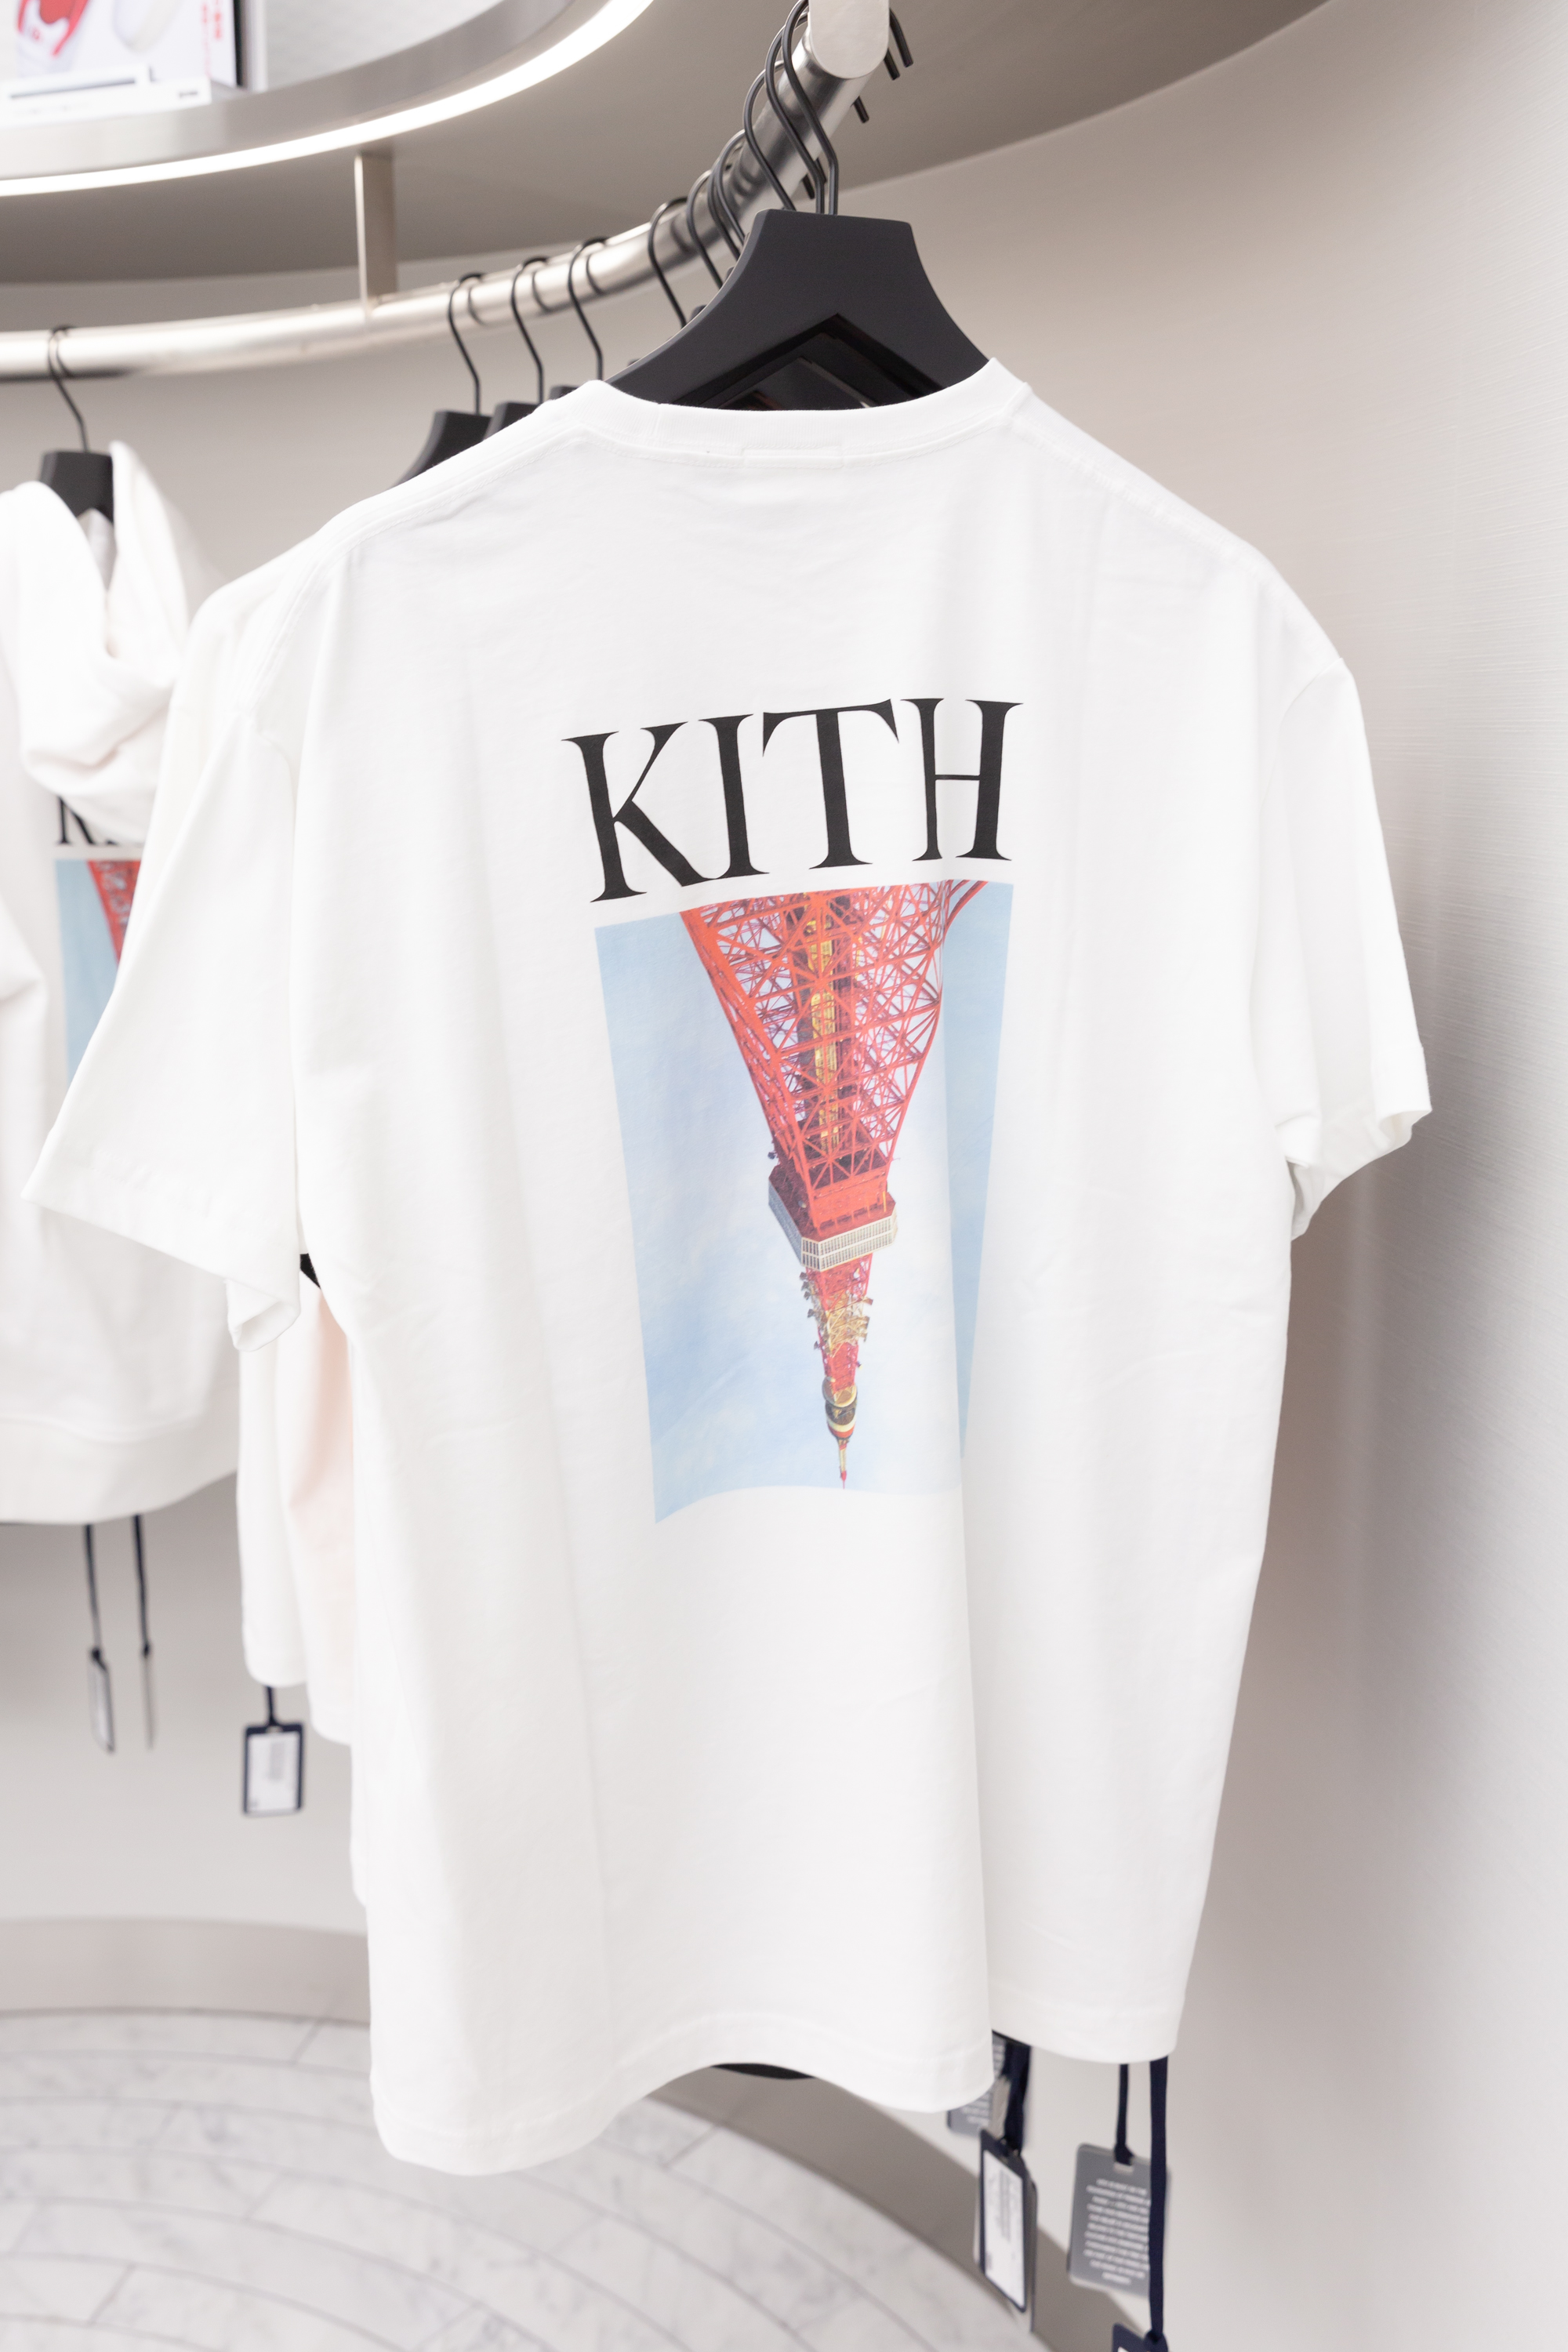 新発売 - TOKYO限定 KITH KITH KITH TOKYO 限定 TOKYO限定 スクランブル Tシャツ Tシャツ/カットソー(半袖  Mサイズ 渋谷スクランブルtシャツ メンズ